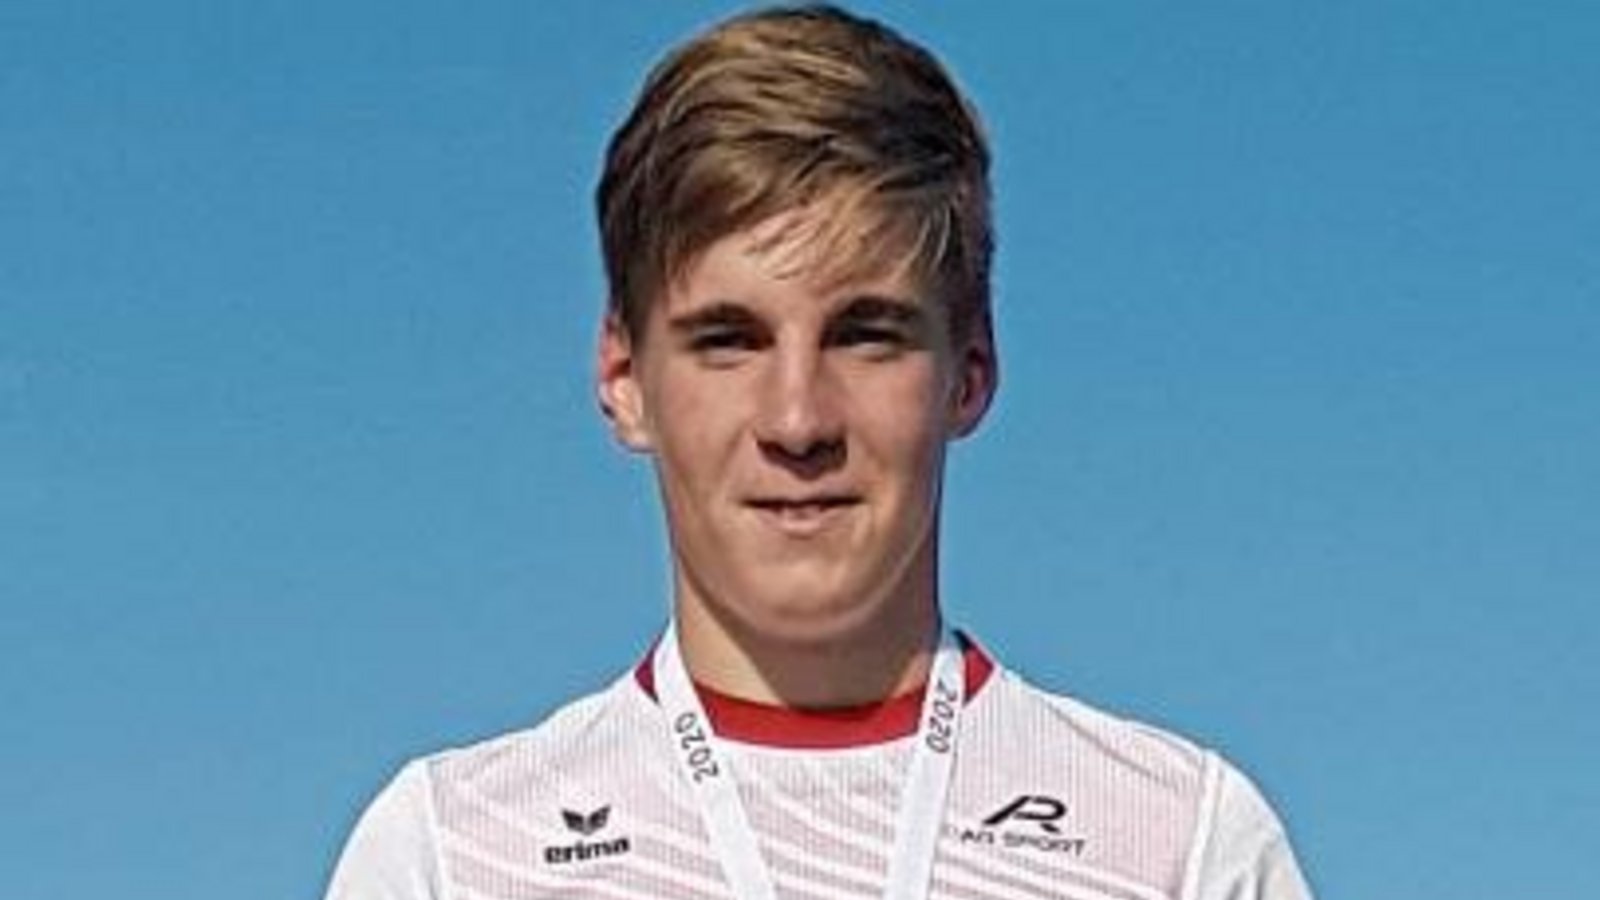 Finn Breitkreutz hat sich bei den württembergischen Meisterschaften der U 16 als wahrer Medaillensammler betätigt. Foto: privat